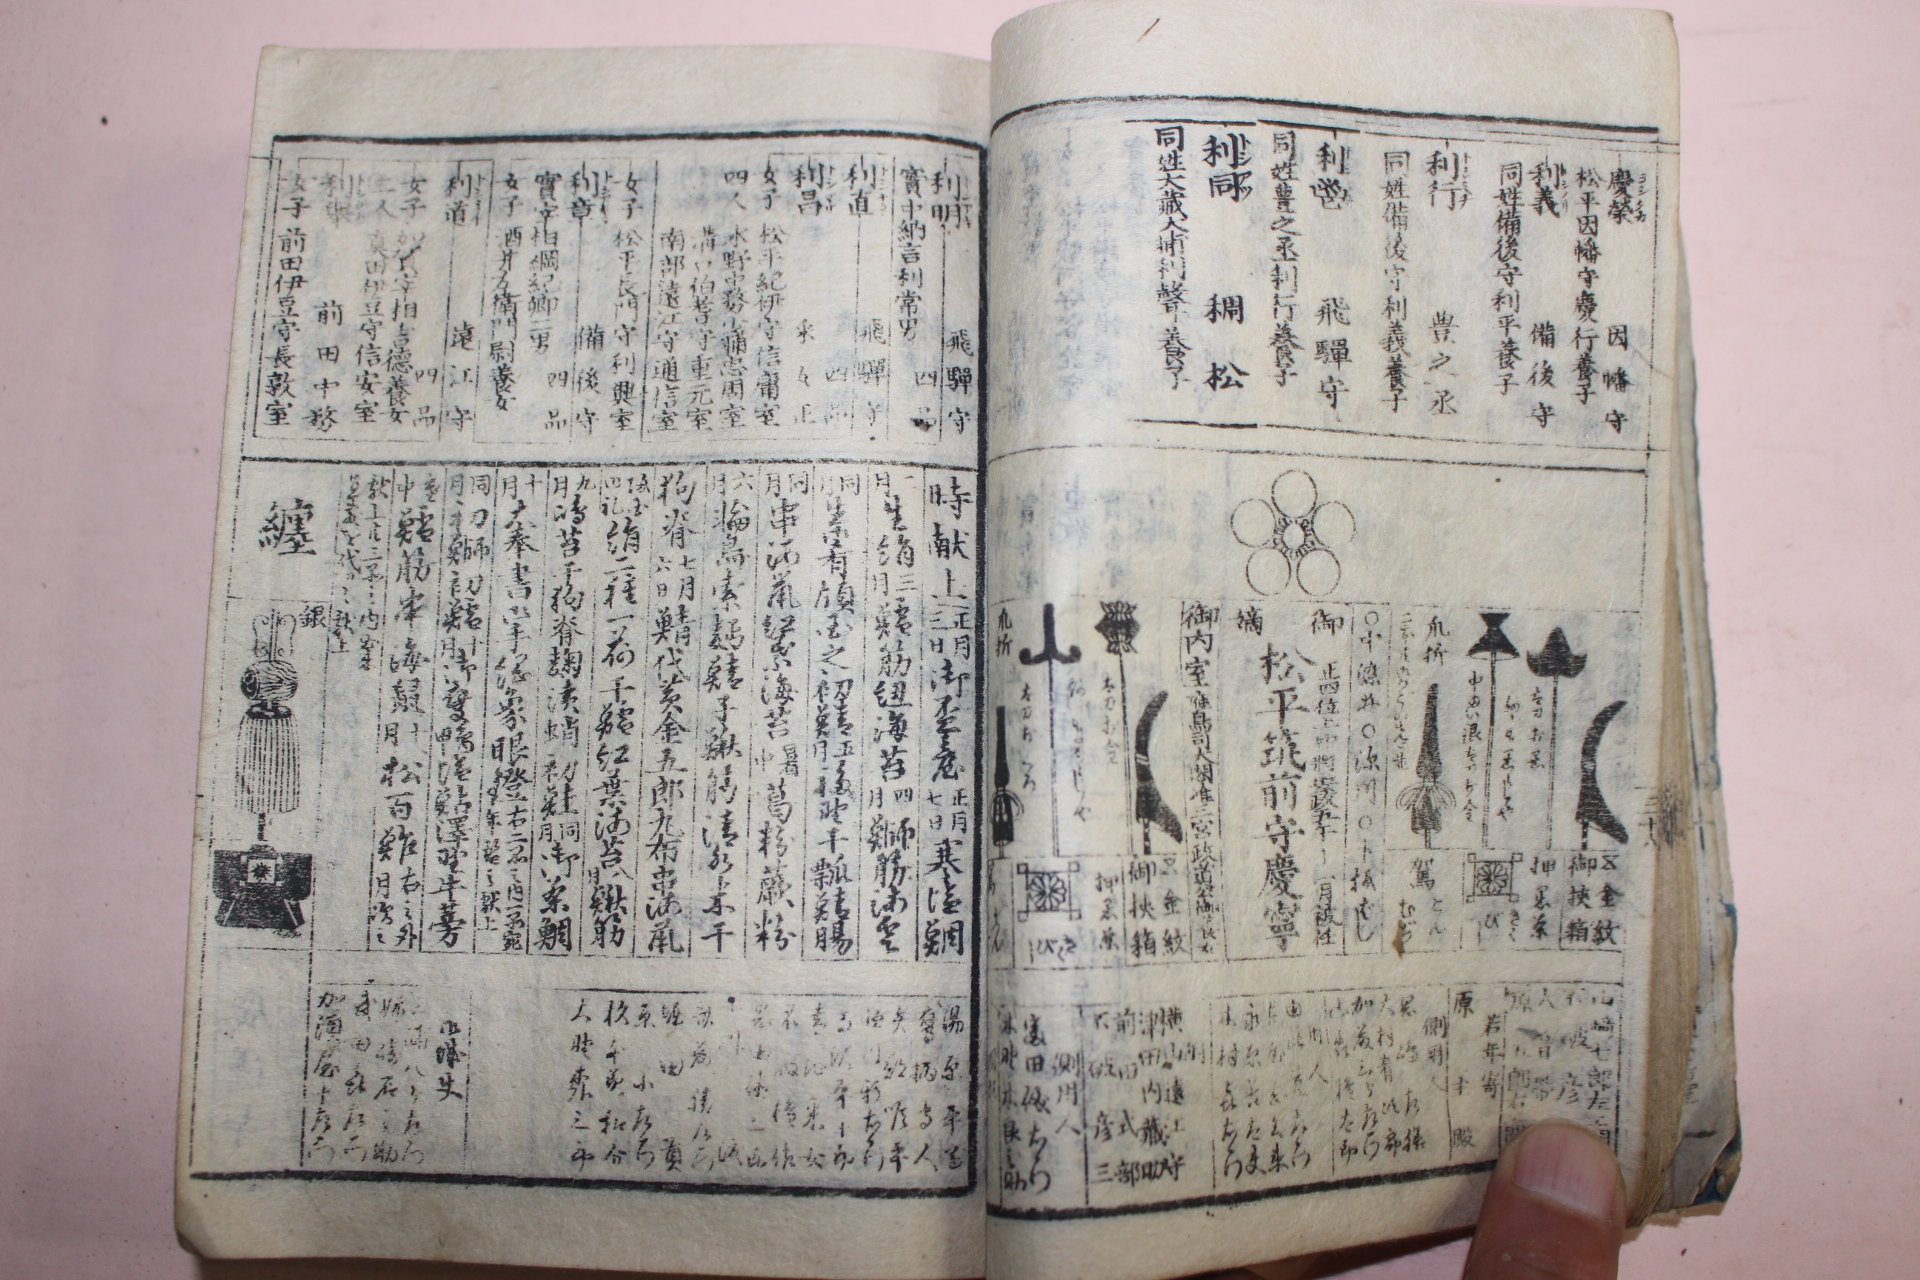 에도시기 일본목판본 강호시기의 문중의 마크와 각종무기류가 열거된 책